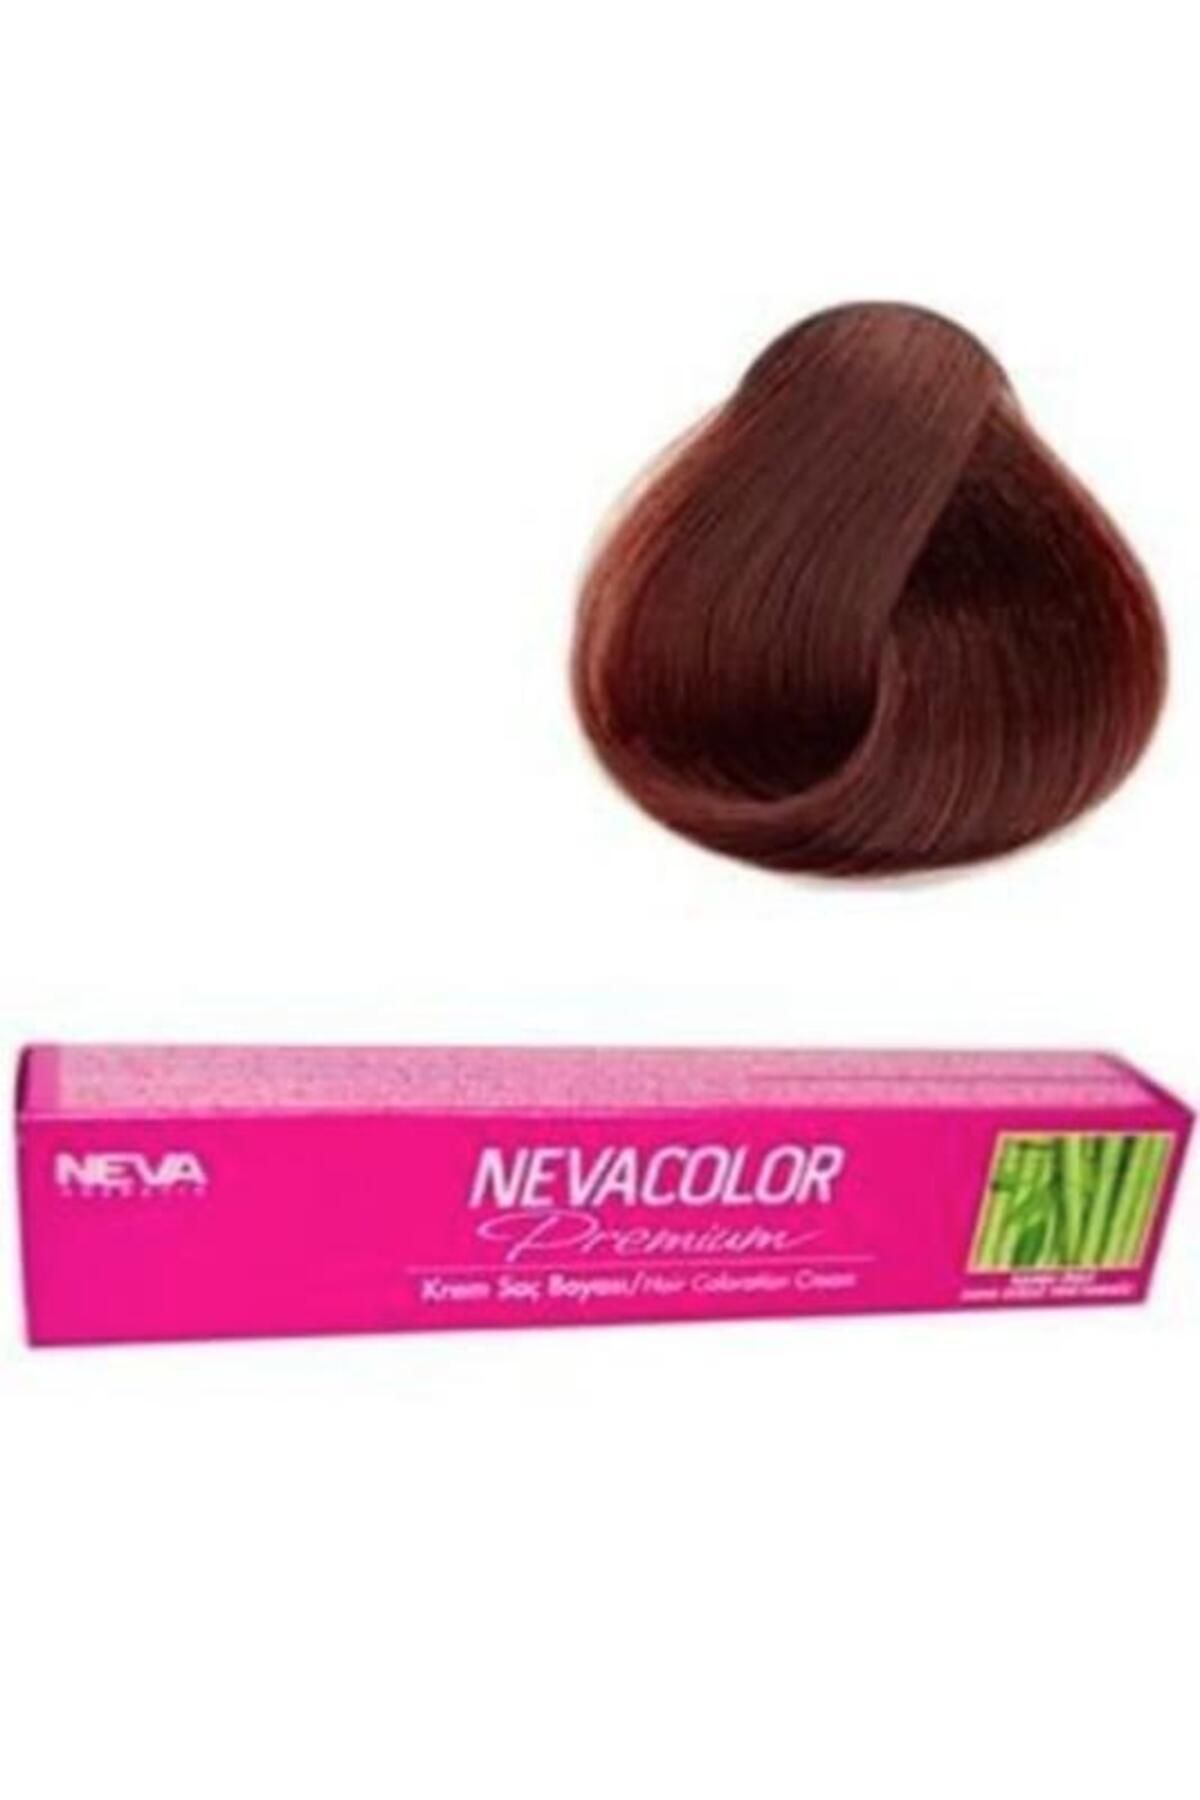 Neva Color Premium Tüp Saç Boyası Türk Kahvesi 50 ml 4.07